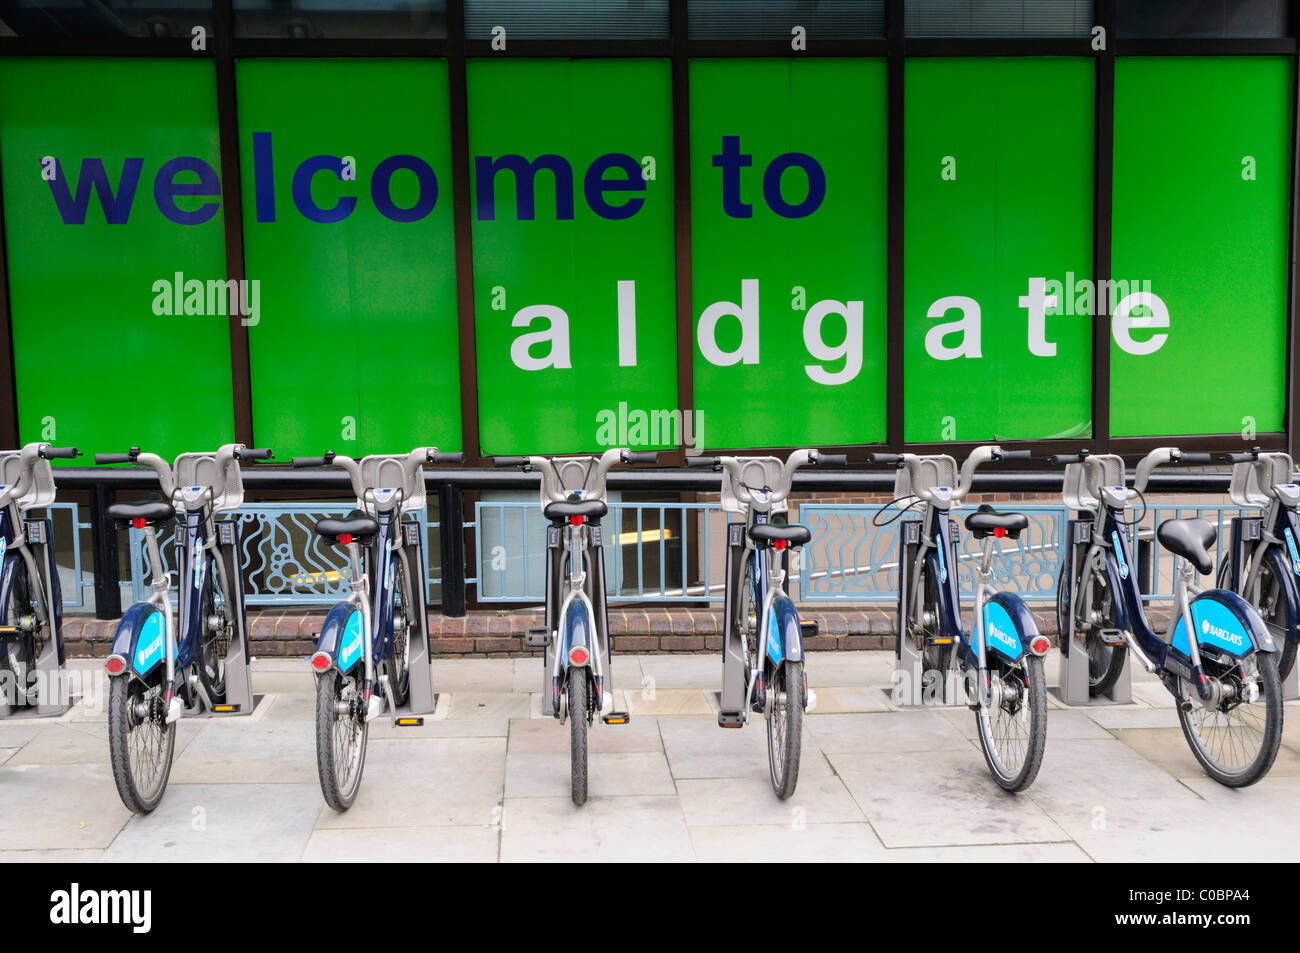 Willkommen Sie bei Aldgate Zeichen und Barclays Radfahren Schema Fahrräder, Aldgate, London, England, Vereinigtes Königreich Stockfoto